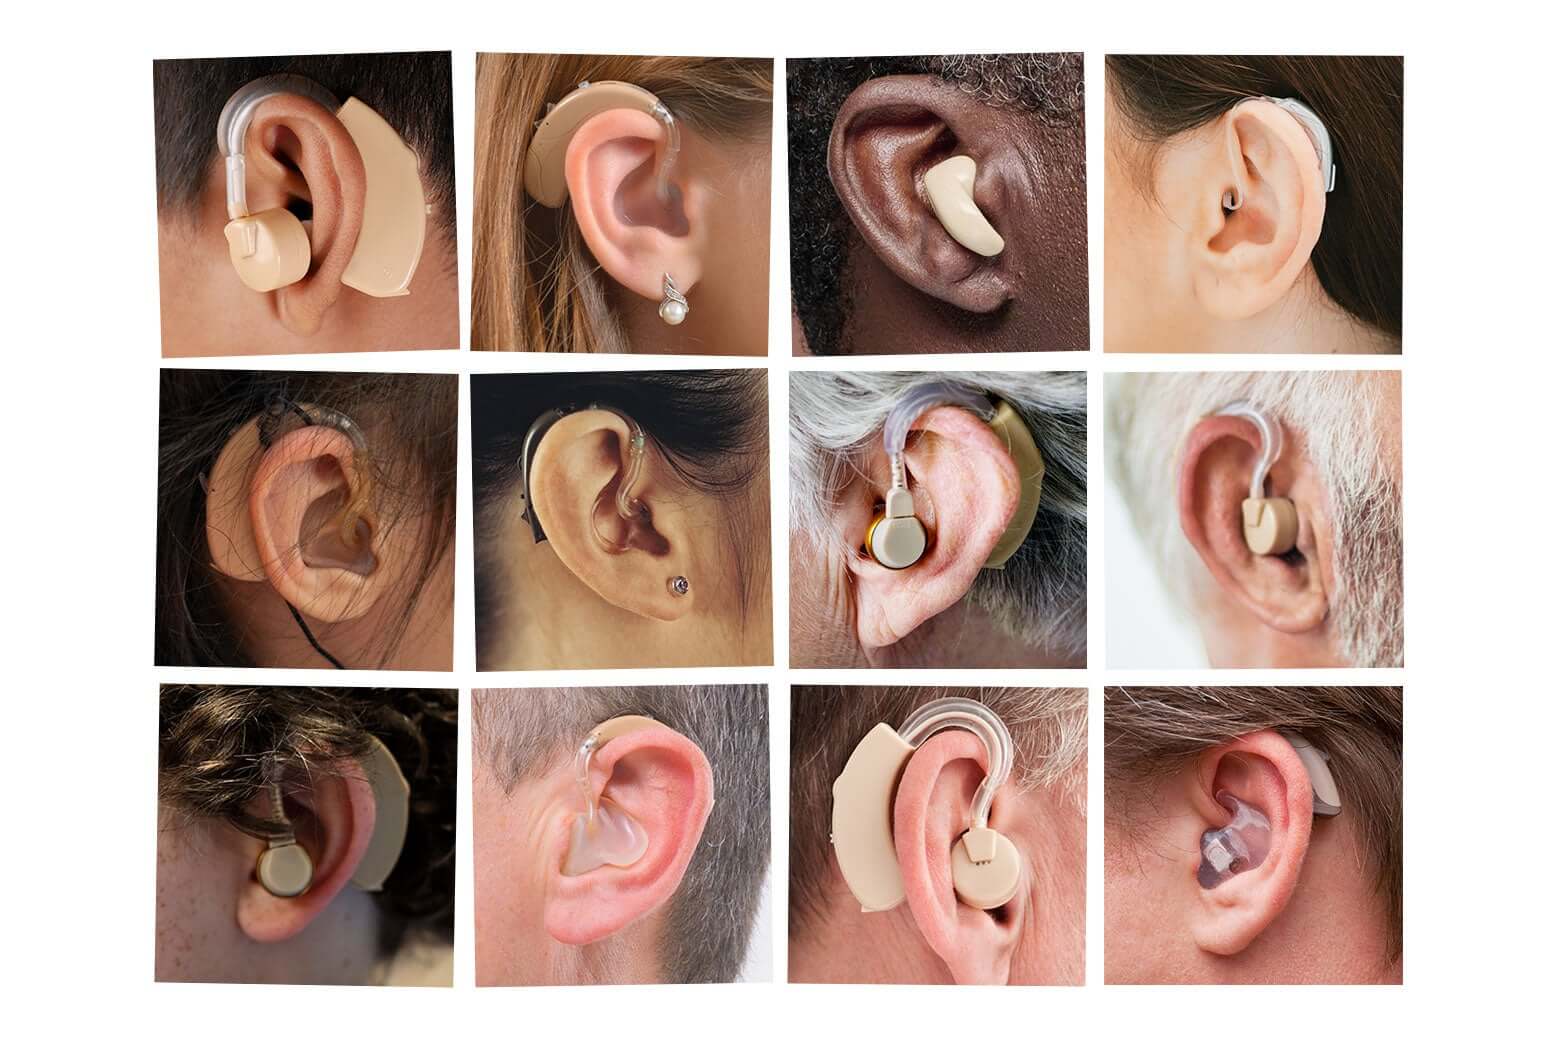 سمعک دیجیتال سمعک: راهکاری مدرن برای بهبود شنوایی و کیفیت زندگی